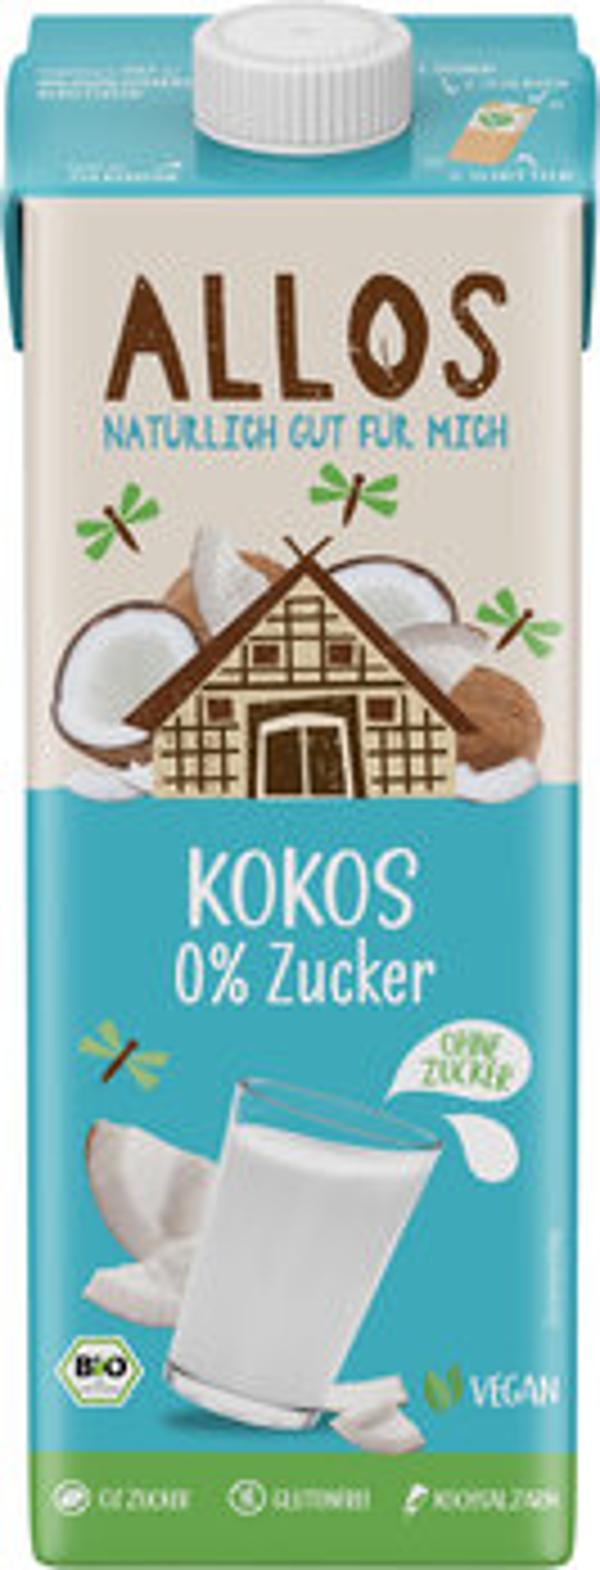 Produktfoto zu Kokos Drink - 1l